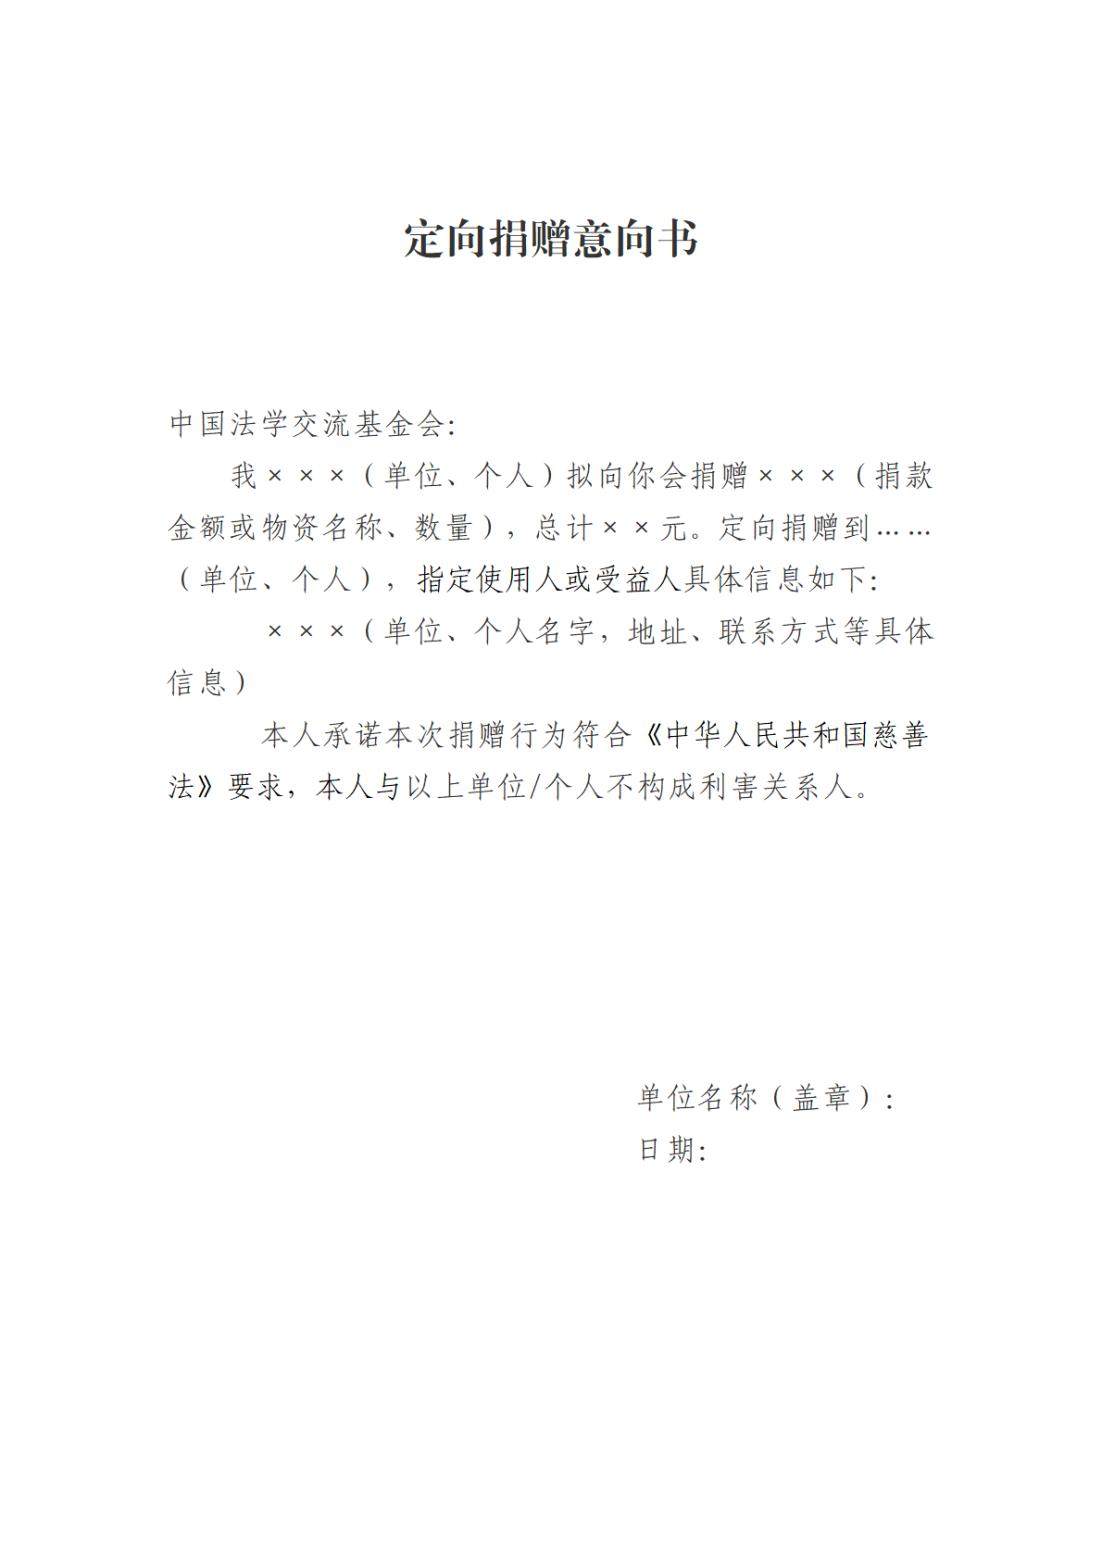 中国法学交流基金会定向捐赠管理办法_00.jpg